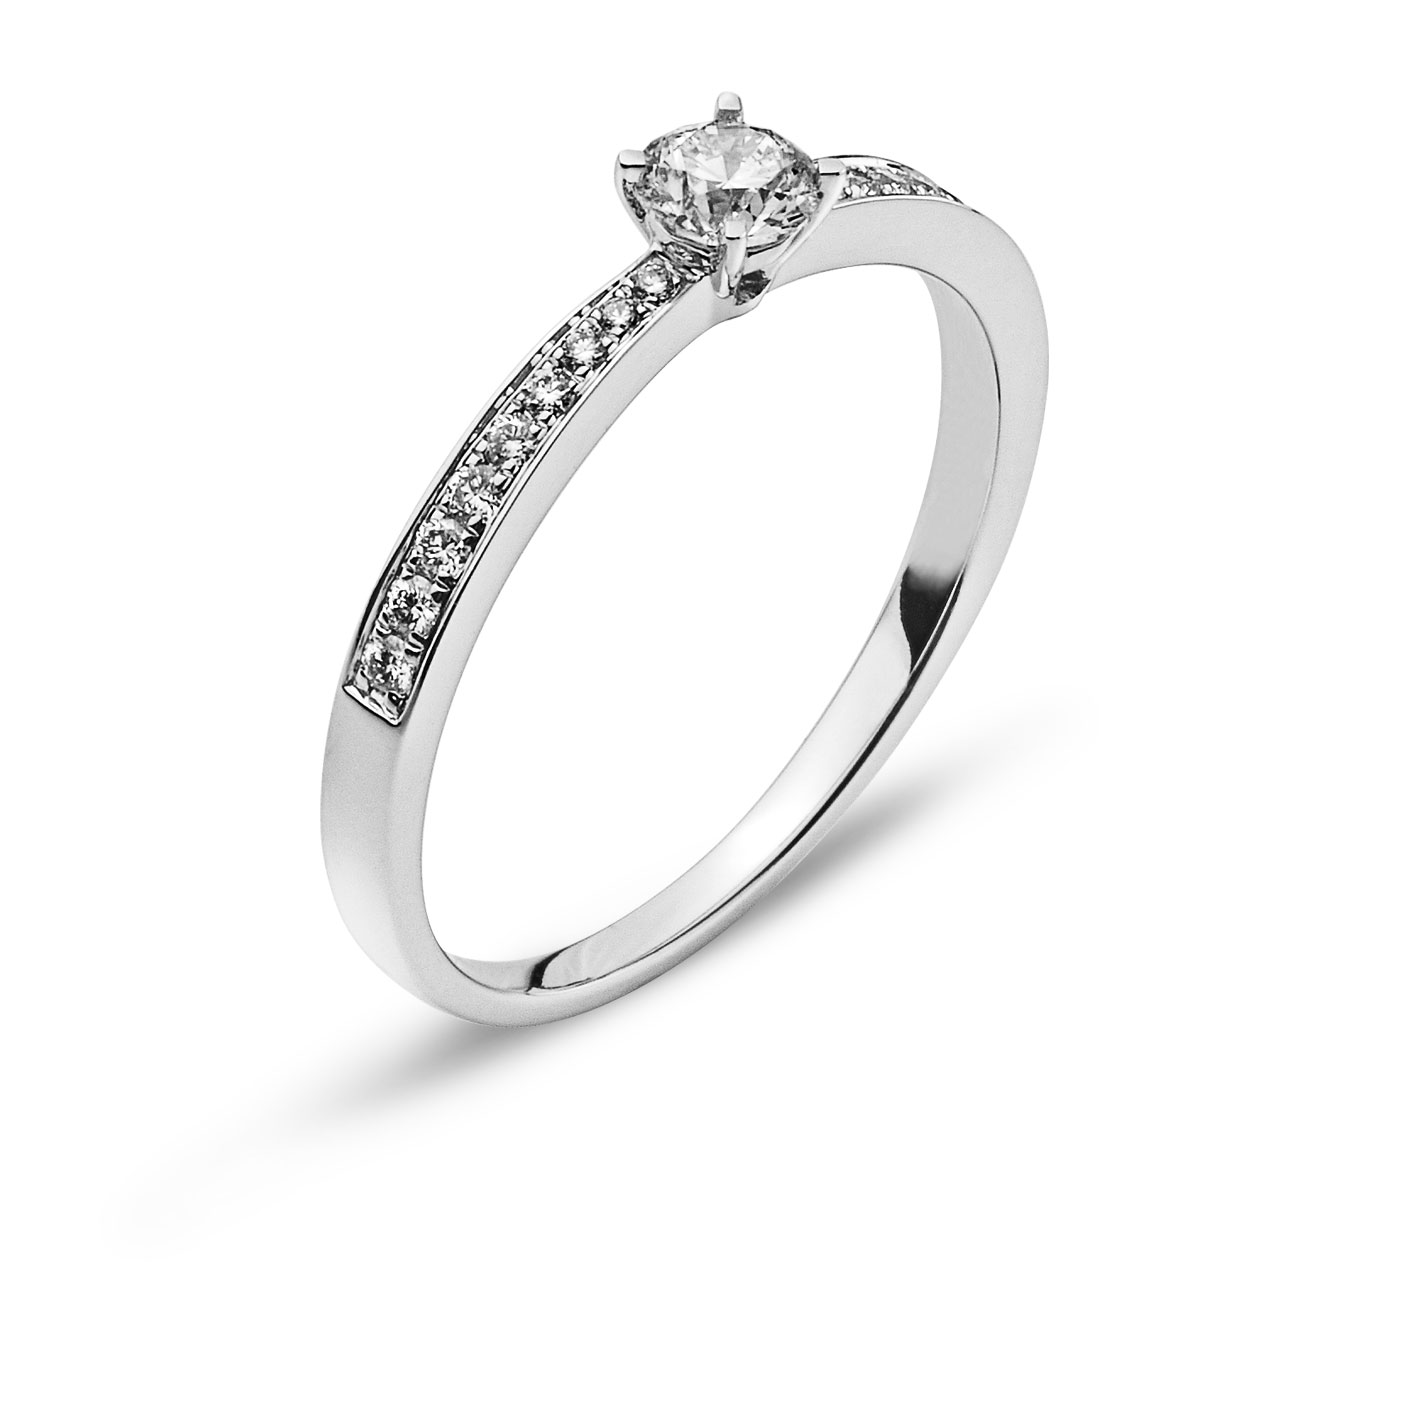 AURONOS Prestige Ring Weissgold 18K Diamanten 0.34ct